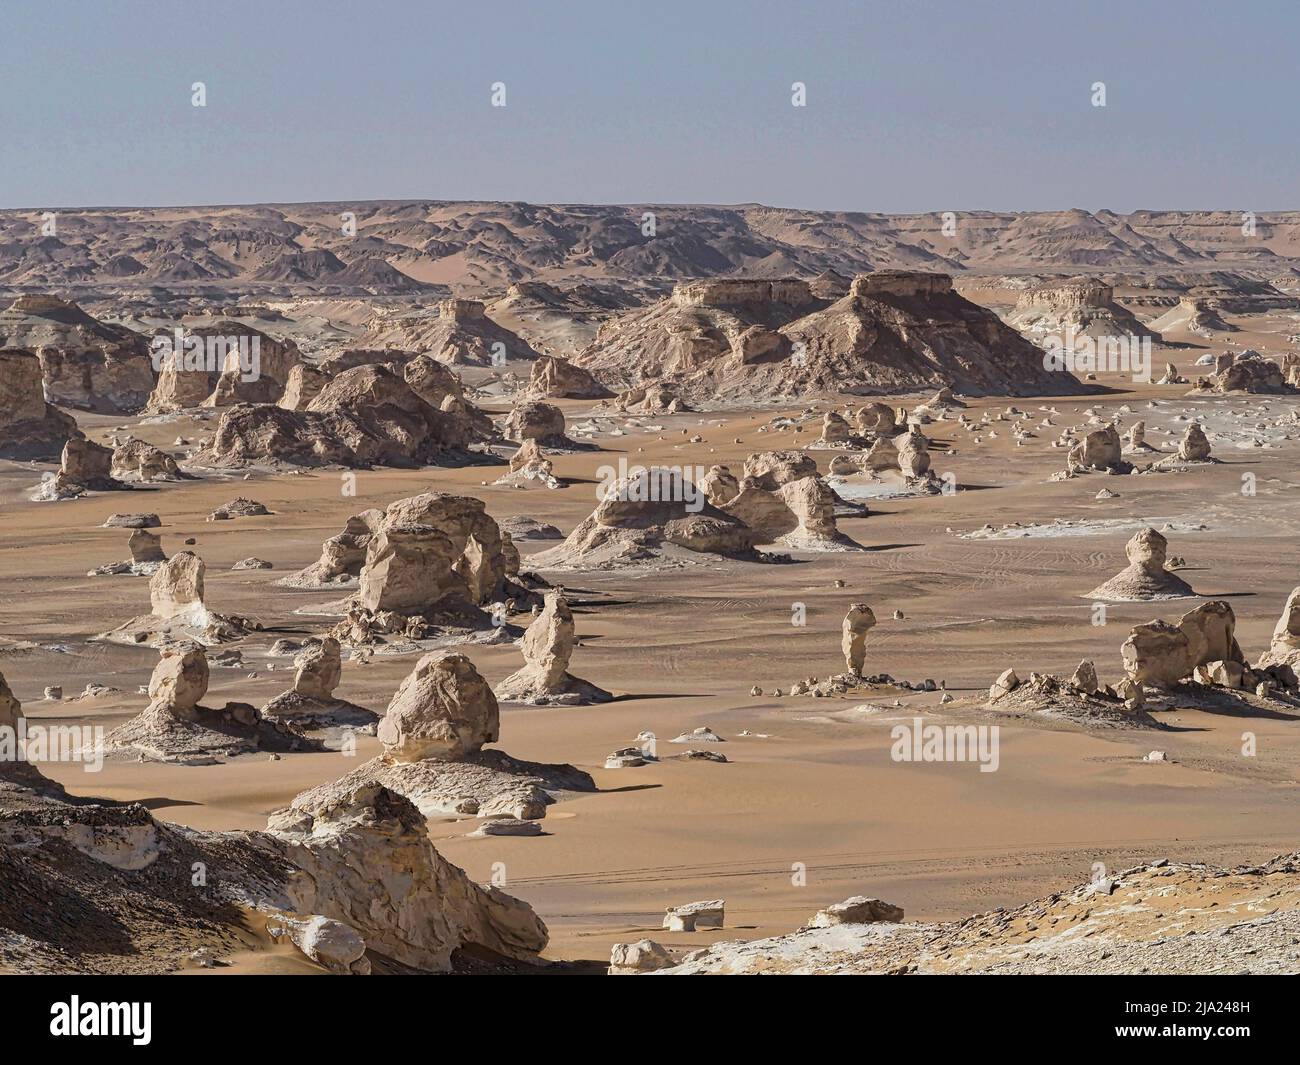 Ampia valle con sculture in gesso nel Westside, deserto Bianco occidentale, vicino all'Oasi Bahariya, Egitto Foto Stock